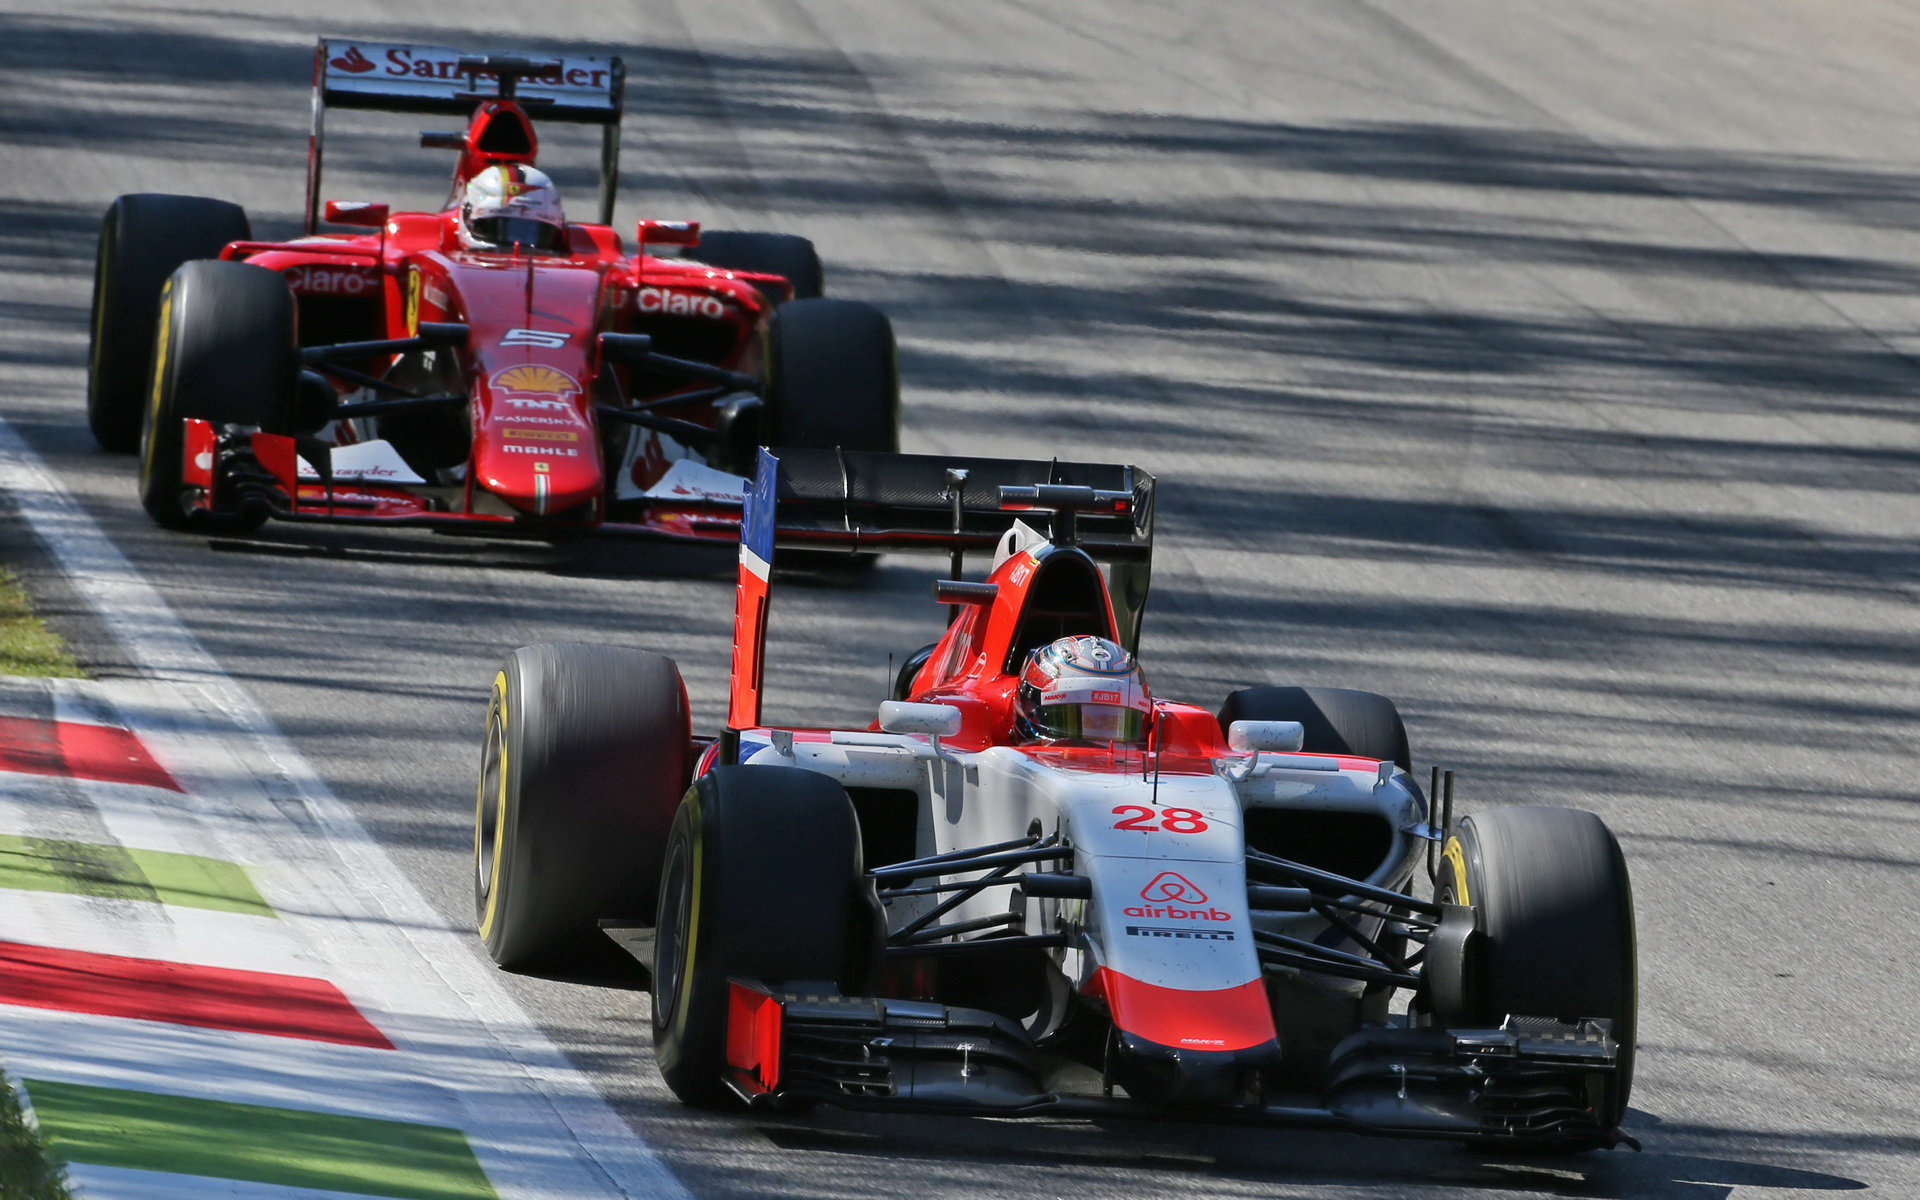 Will Stevens před Sebastianem Vettelem, GP Itálie (Monza)